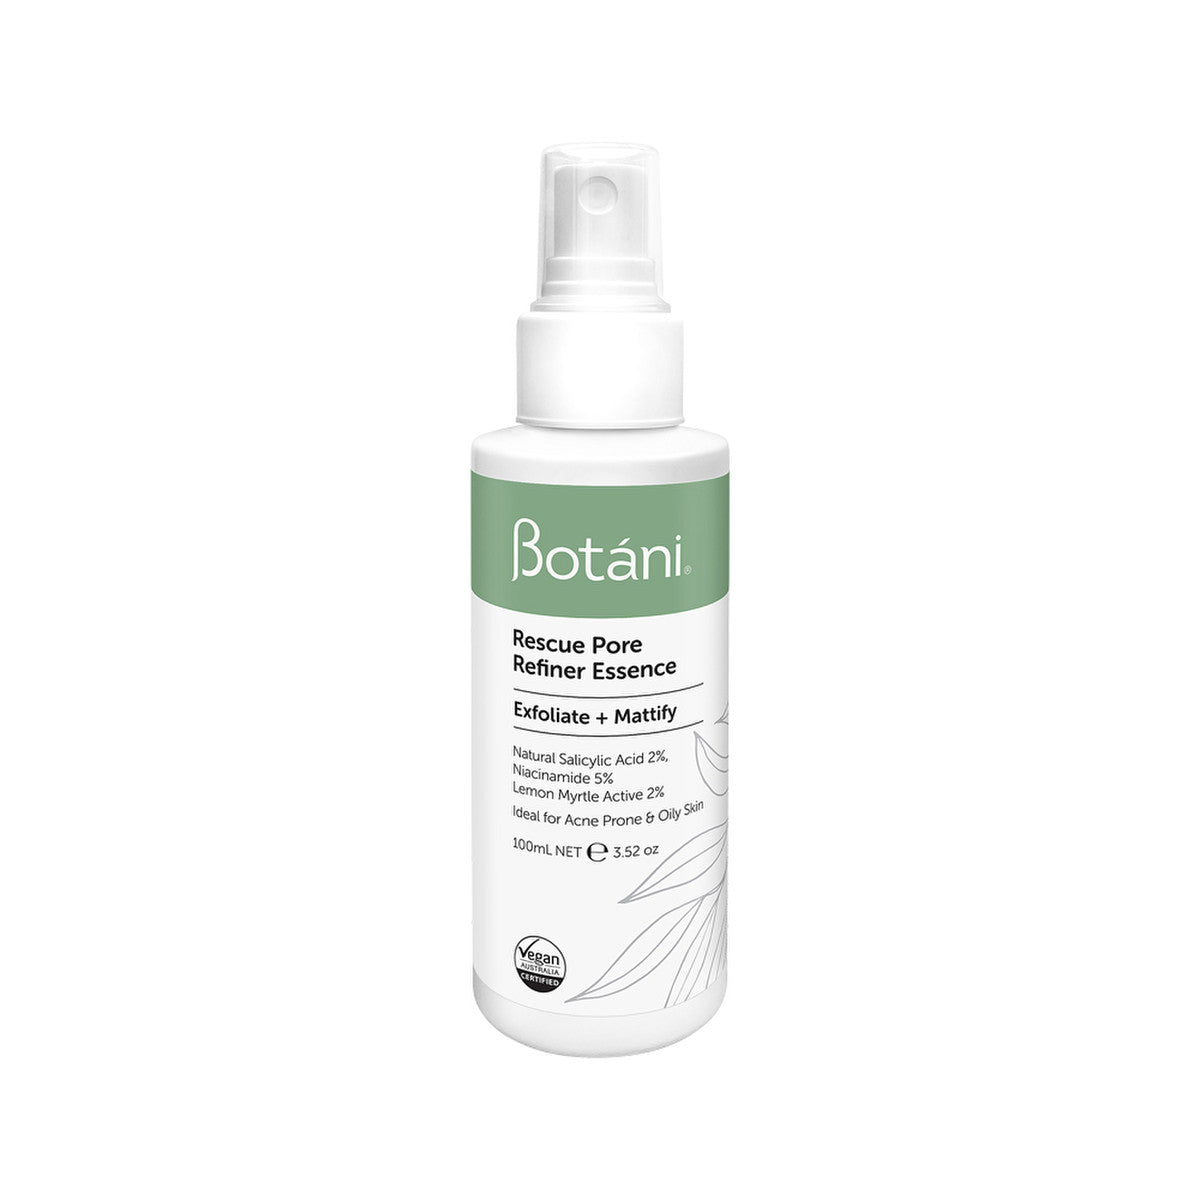 Botani - Rescue Pore Refiner Essence